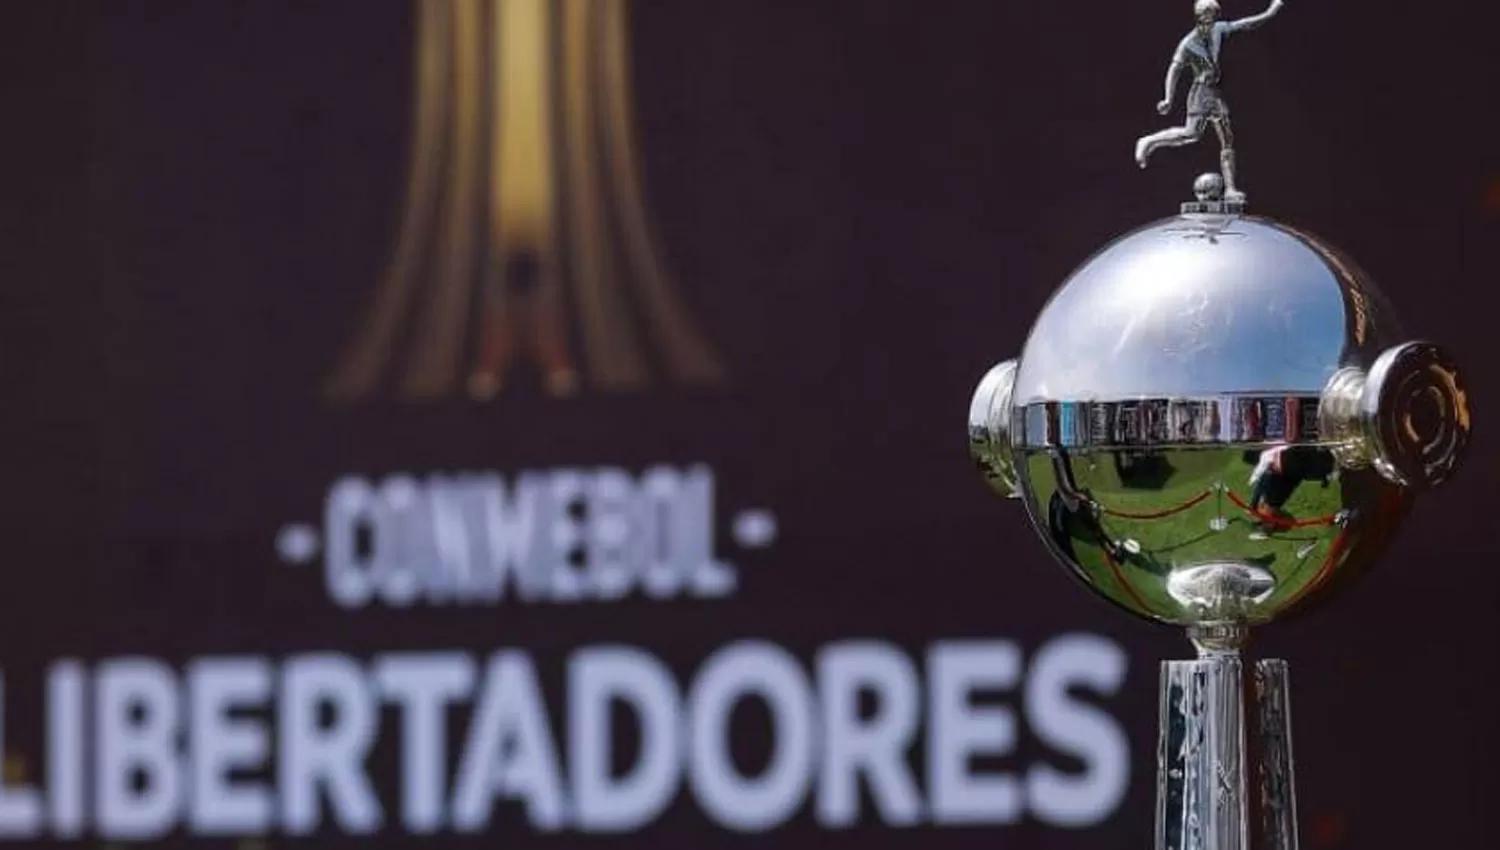 DEFINICIONES. La Copa Libertadores busca a sus finalistas de la edición 2021.